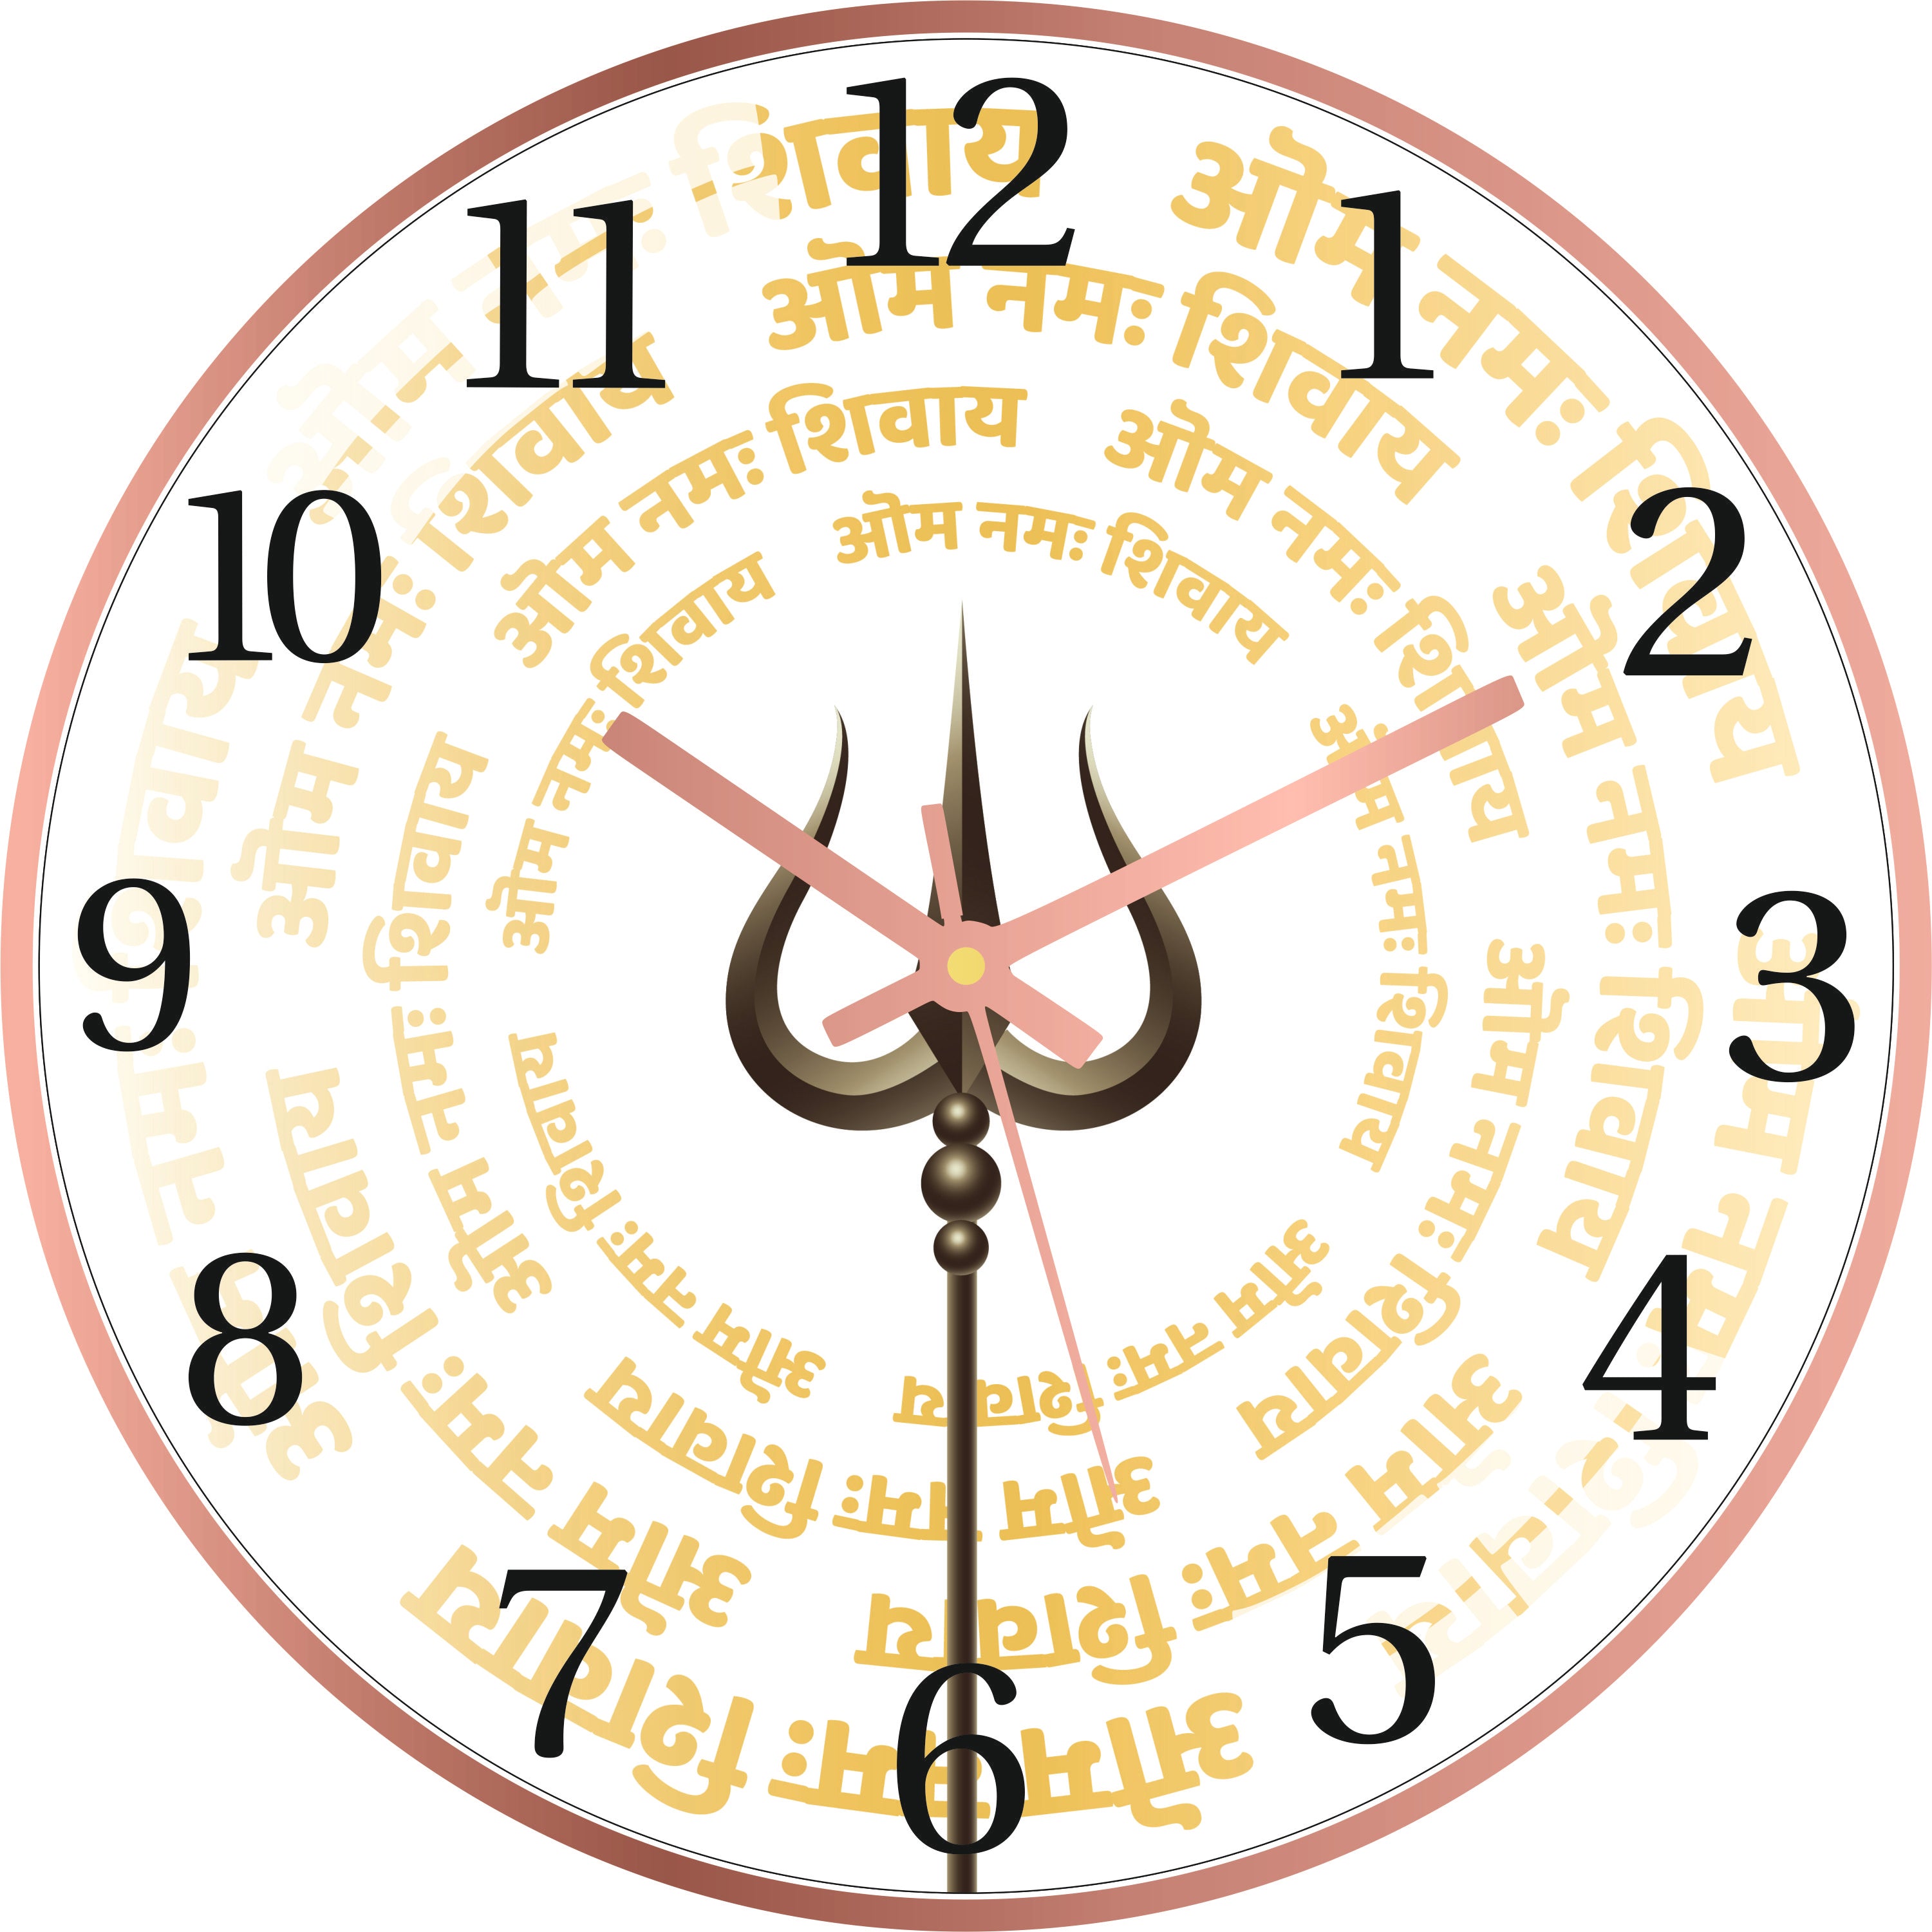 Shiva's Trishul Wall Clock